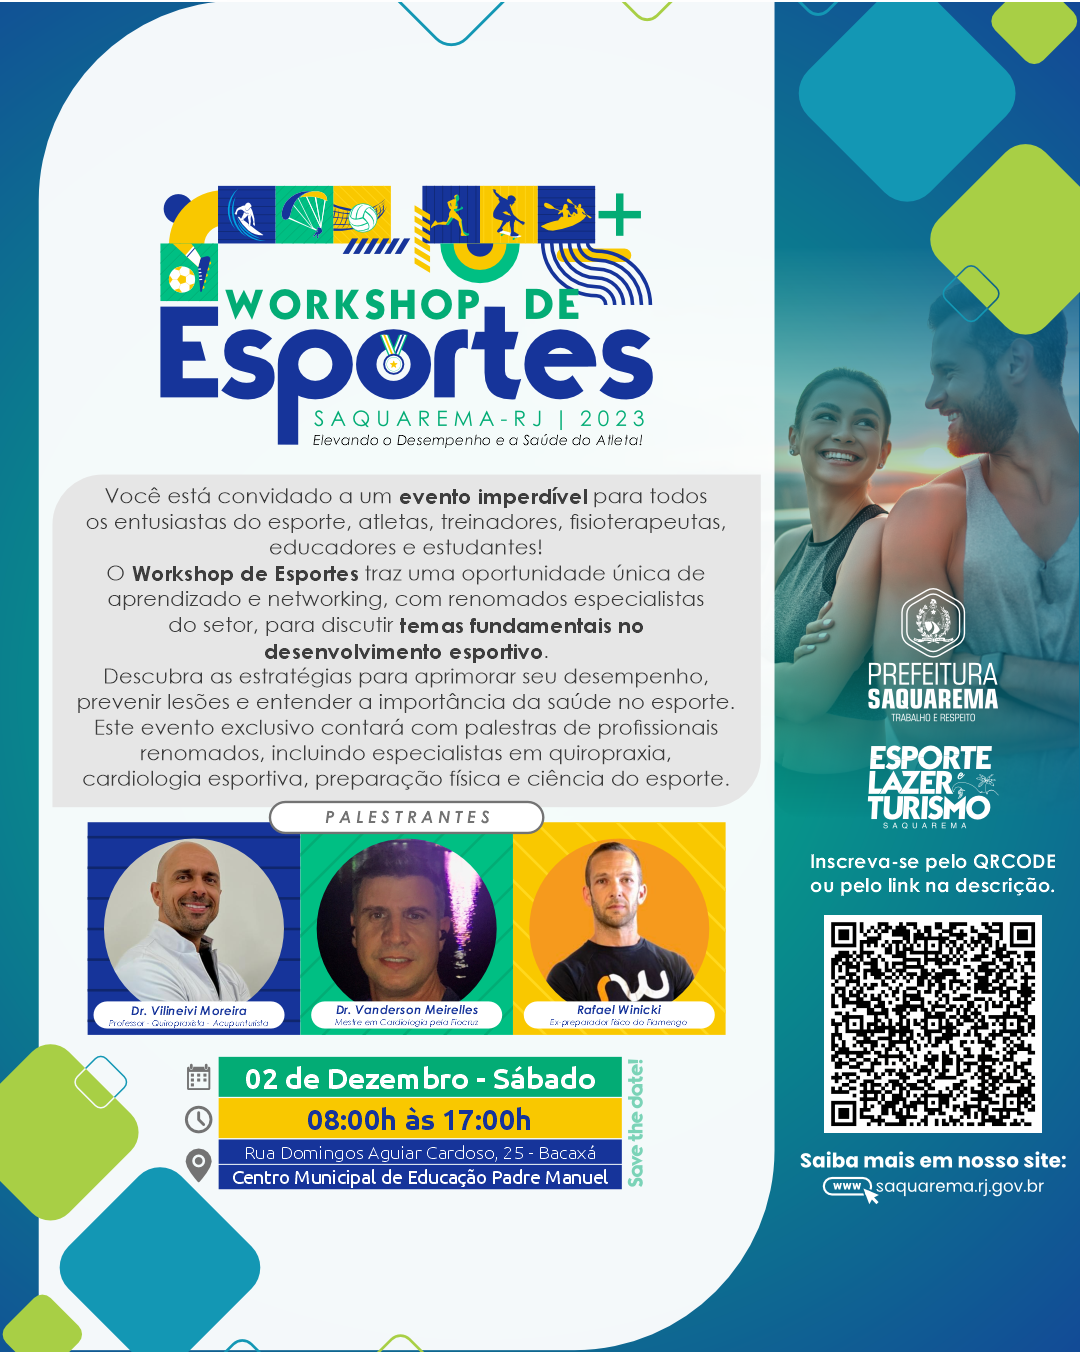 Prefeitura realizará workshop de esportes em Saquarema